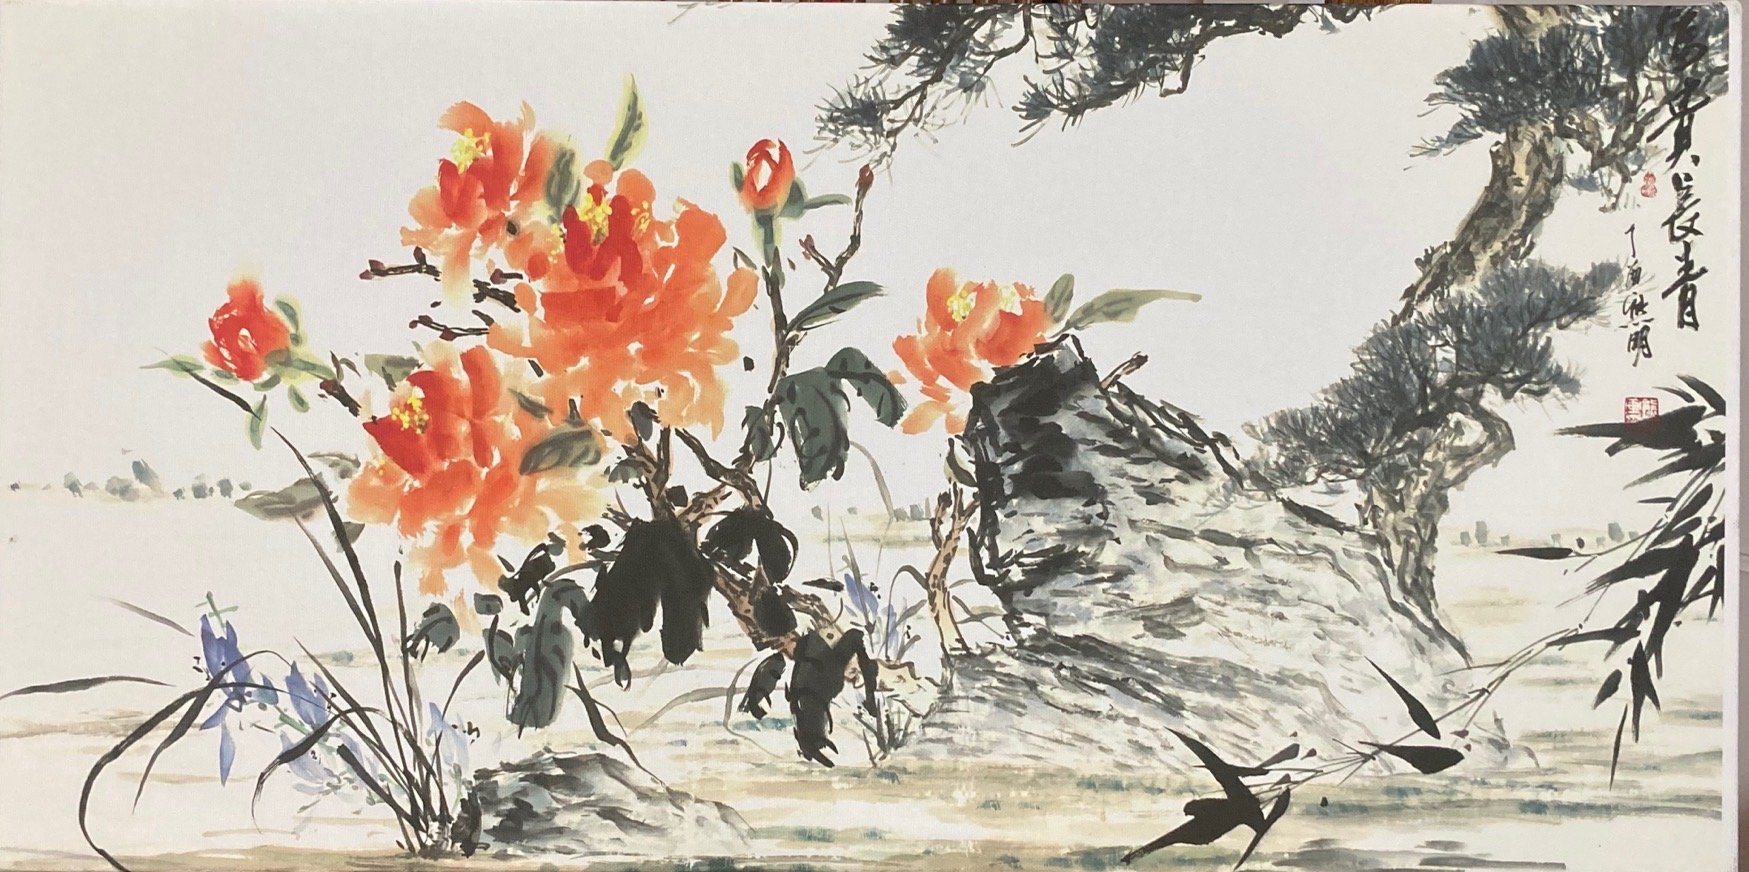 Xiong Jiang Art